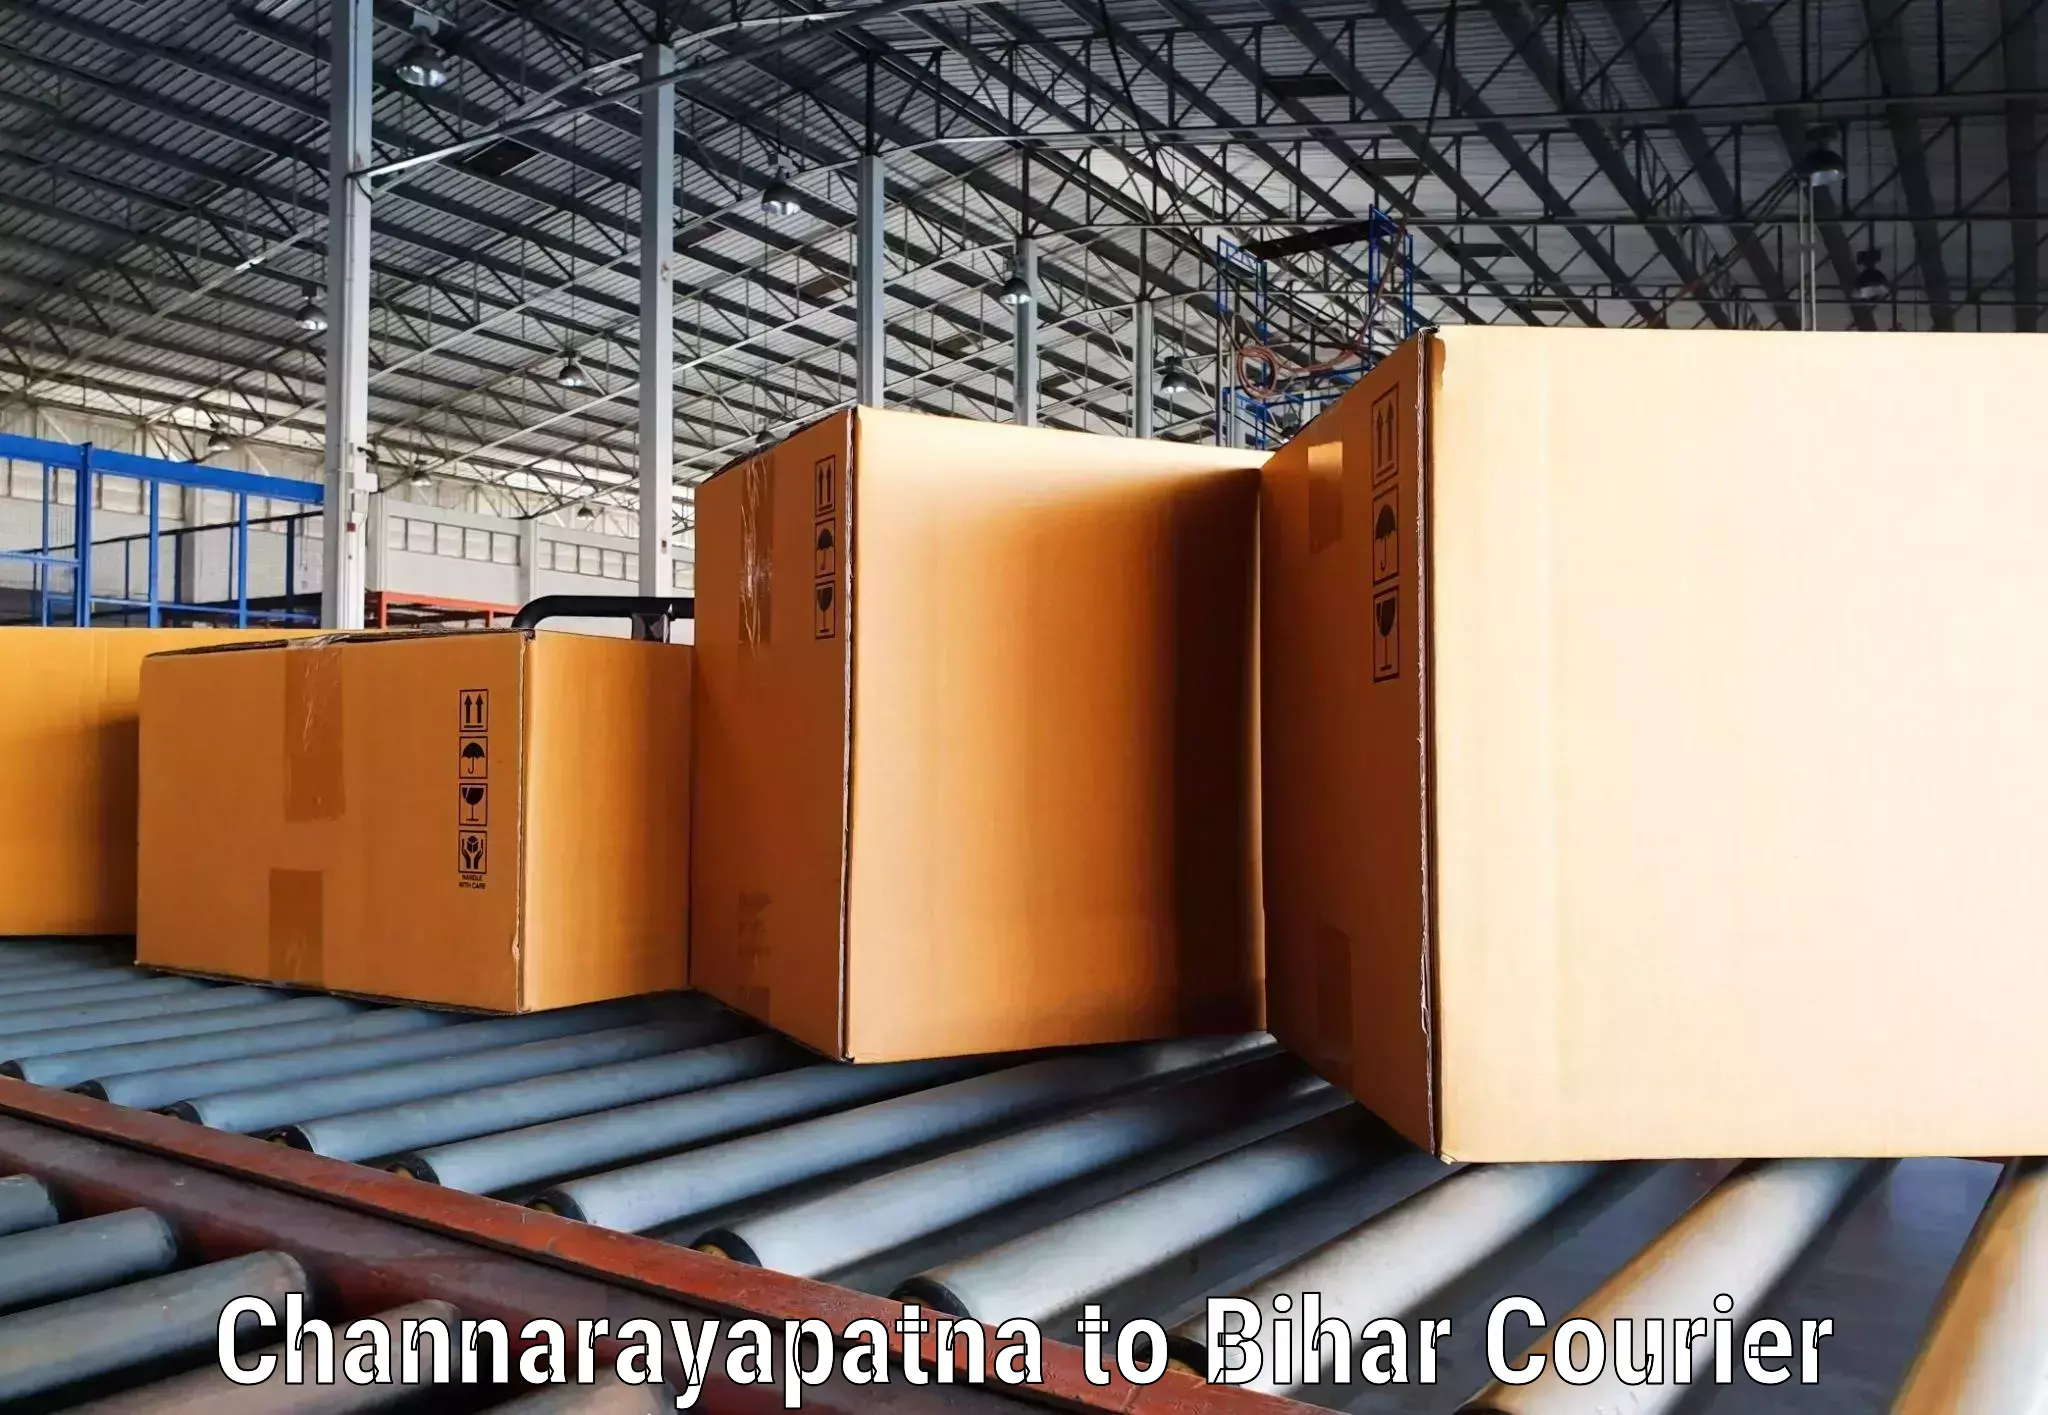 Express logistics service Channarayapatna to Dinara